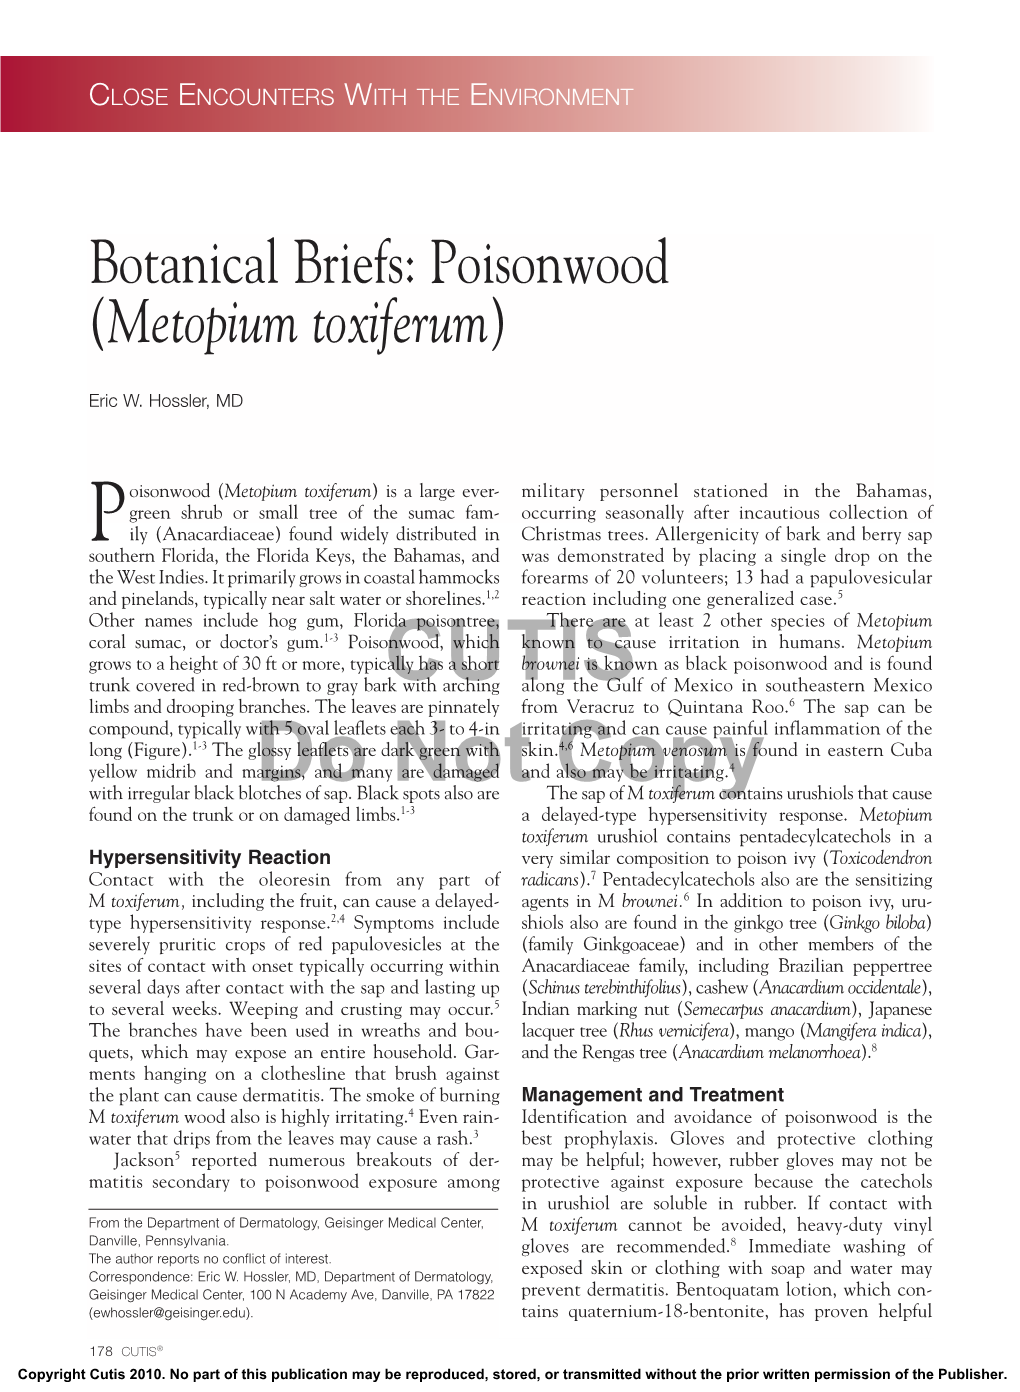 Poisonwood (Metopium Toxiferum)